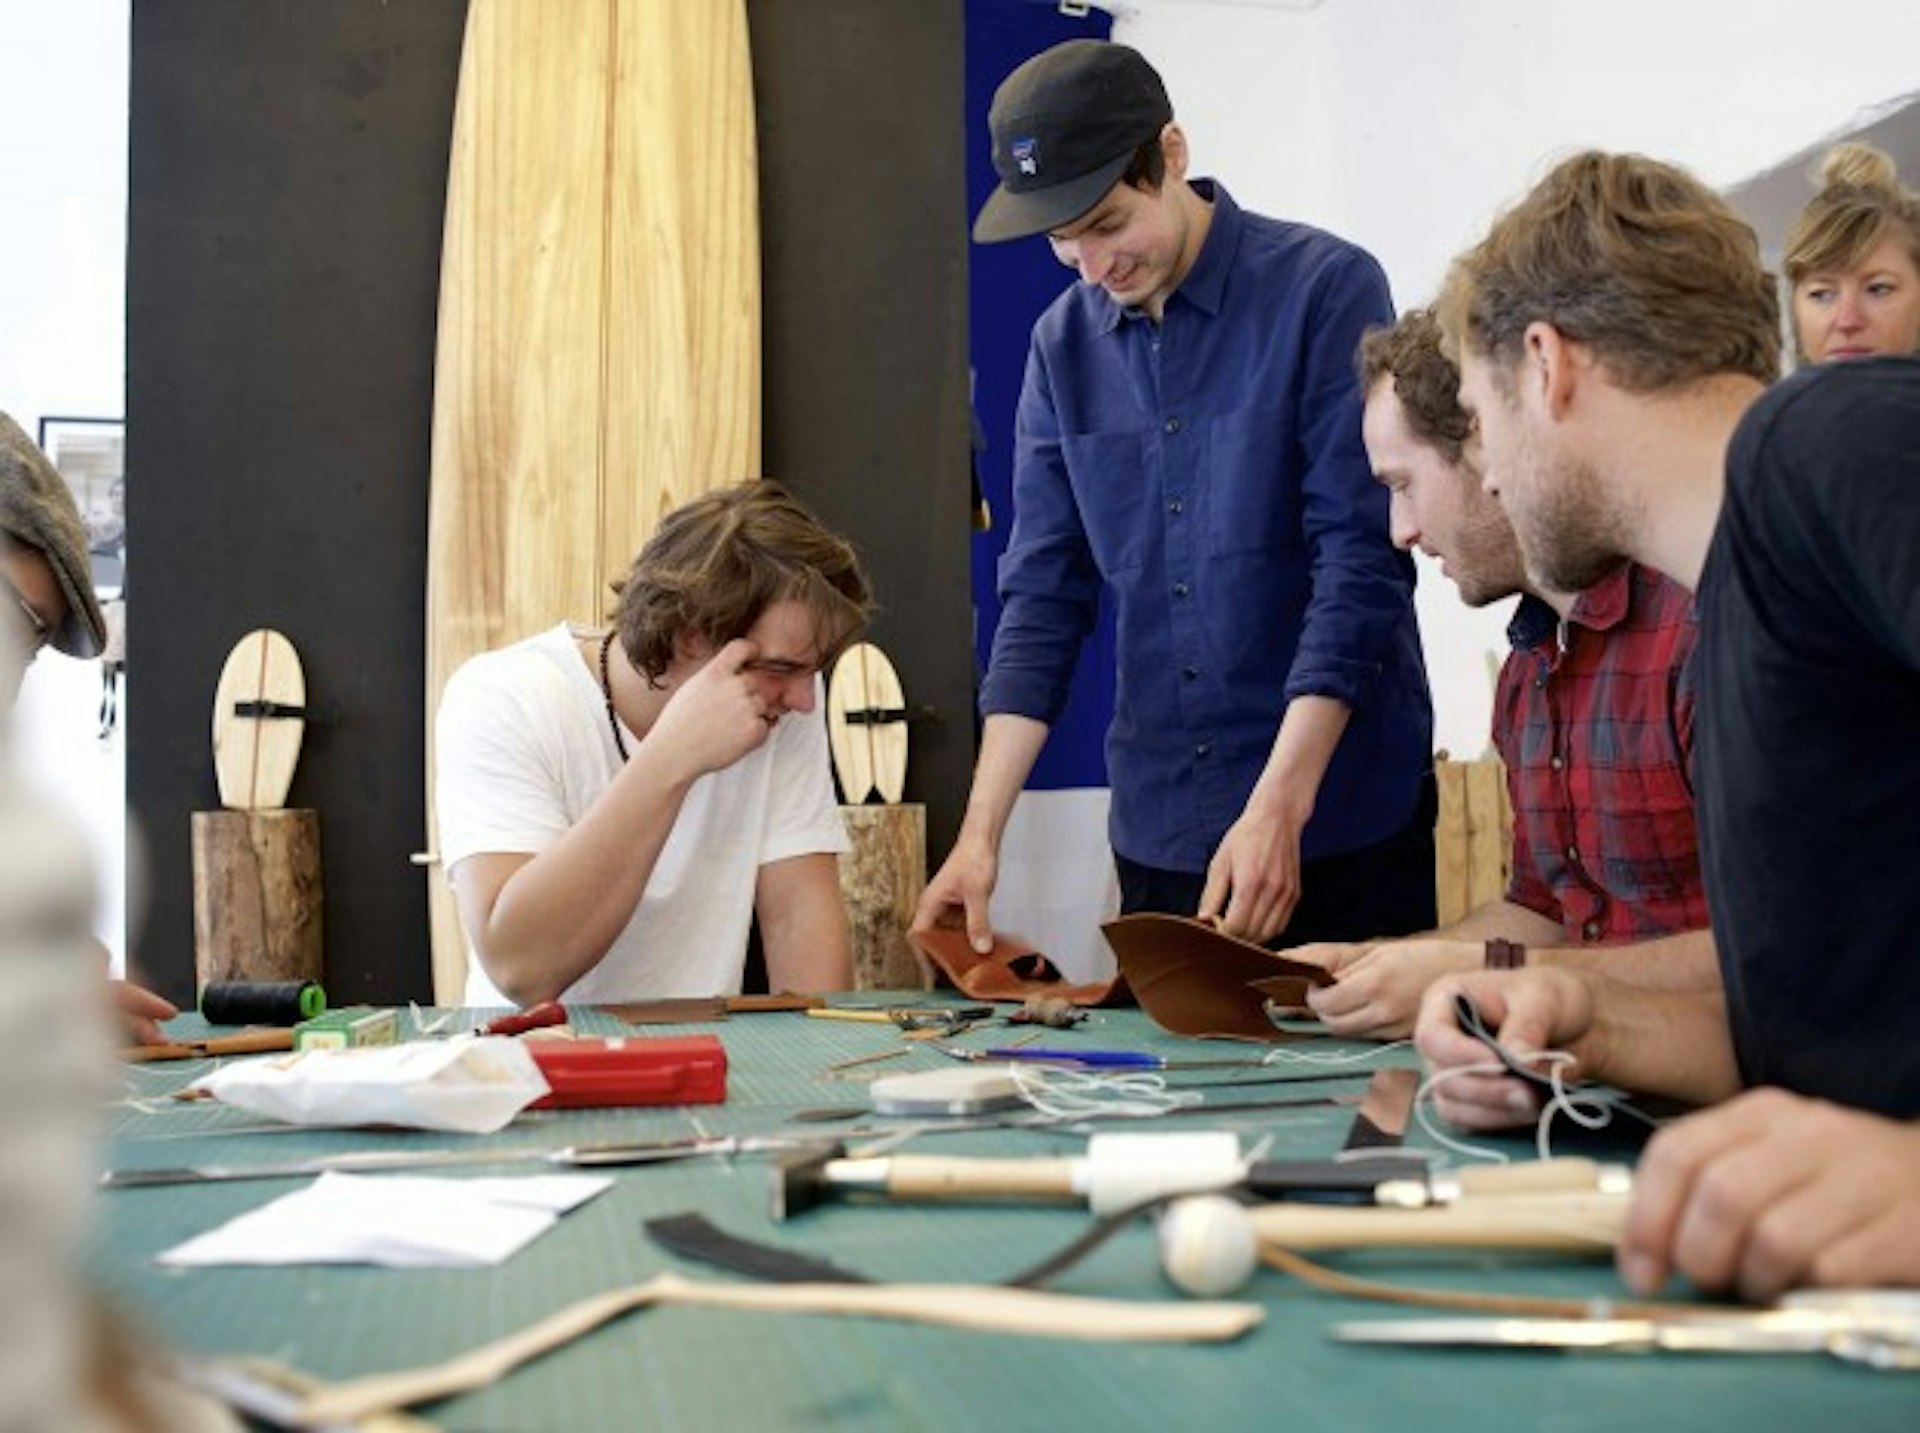 working artisans workshop